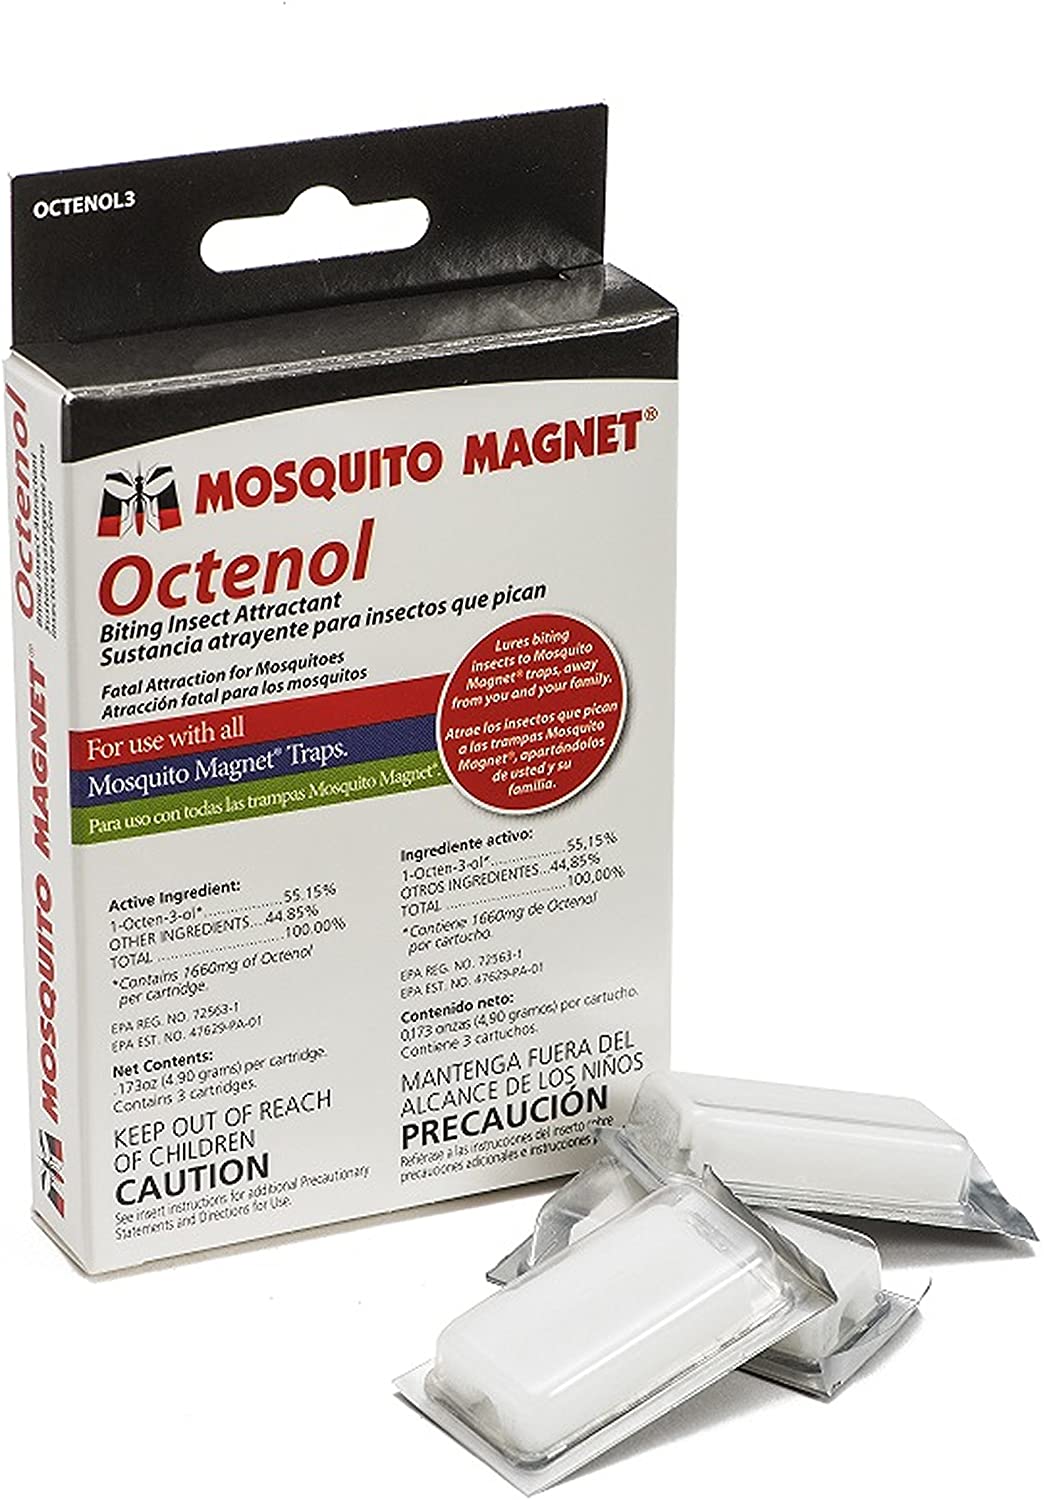 Mosquito Magnet - Octenol Attractant 3PACK